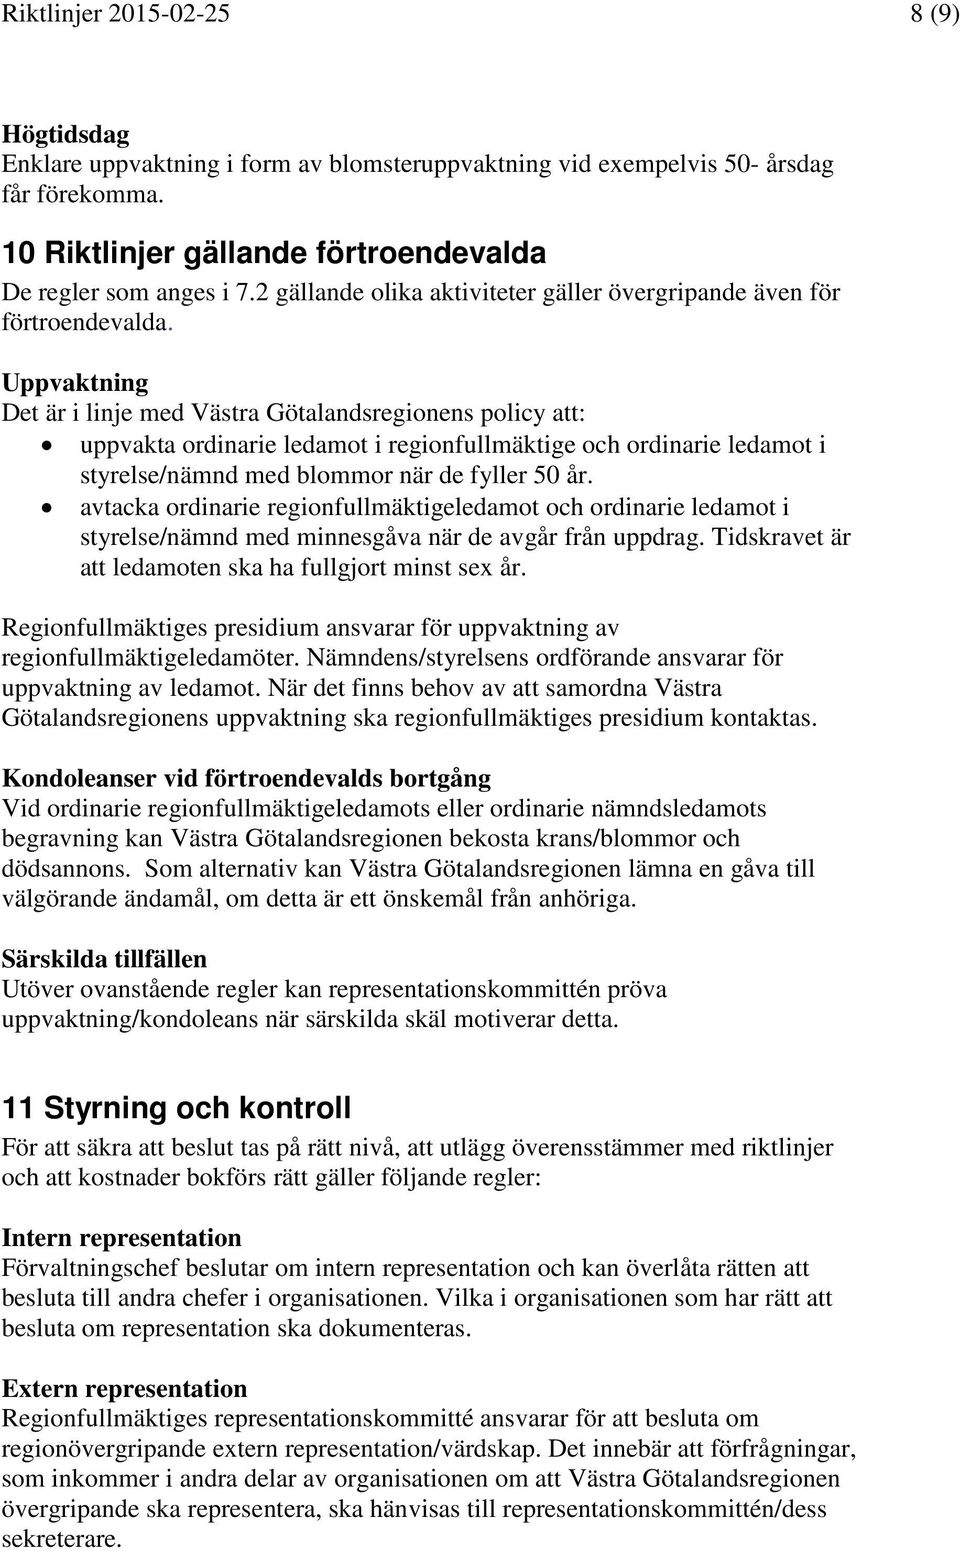 Uppvaktning Det är i linje med Västra Götalandsregionens policy att: uppvakta ordinarie ledamot i regionfullmäktige och ordinarie ledamot i styrelse/nämnd med blommor när de fyller 50 år.